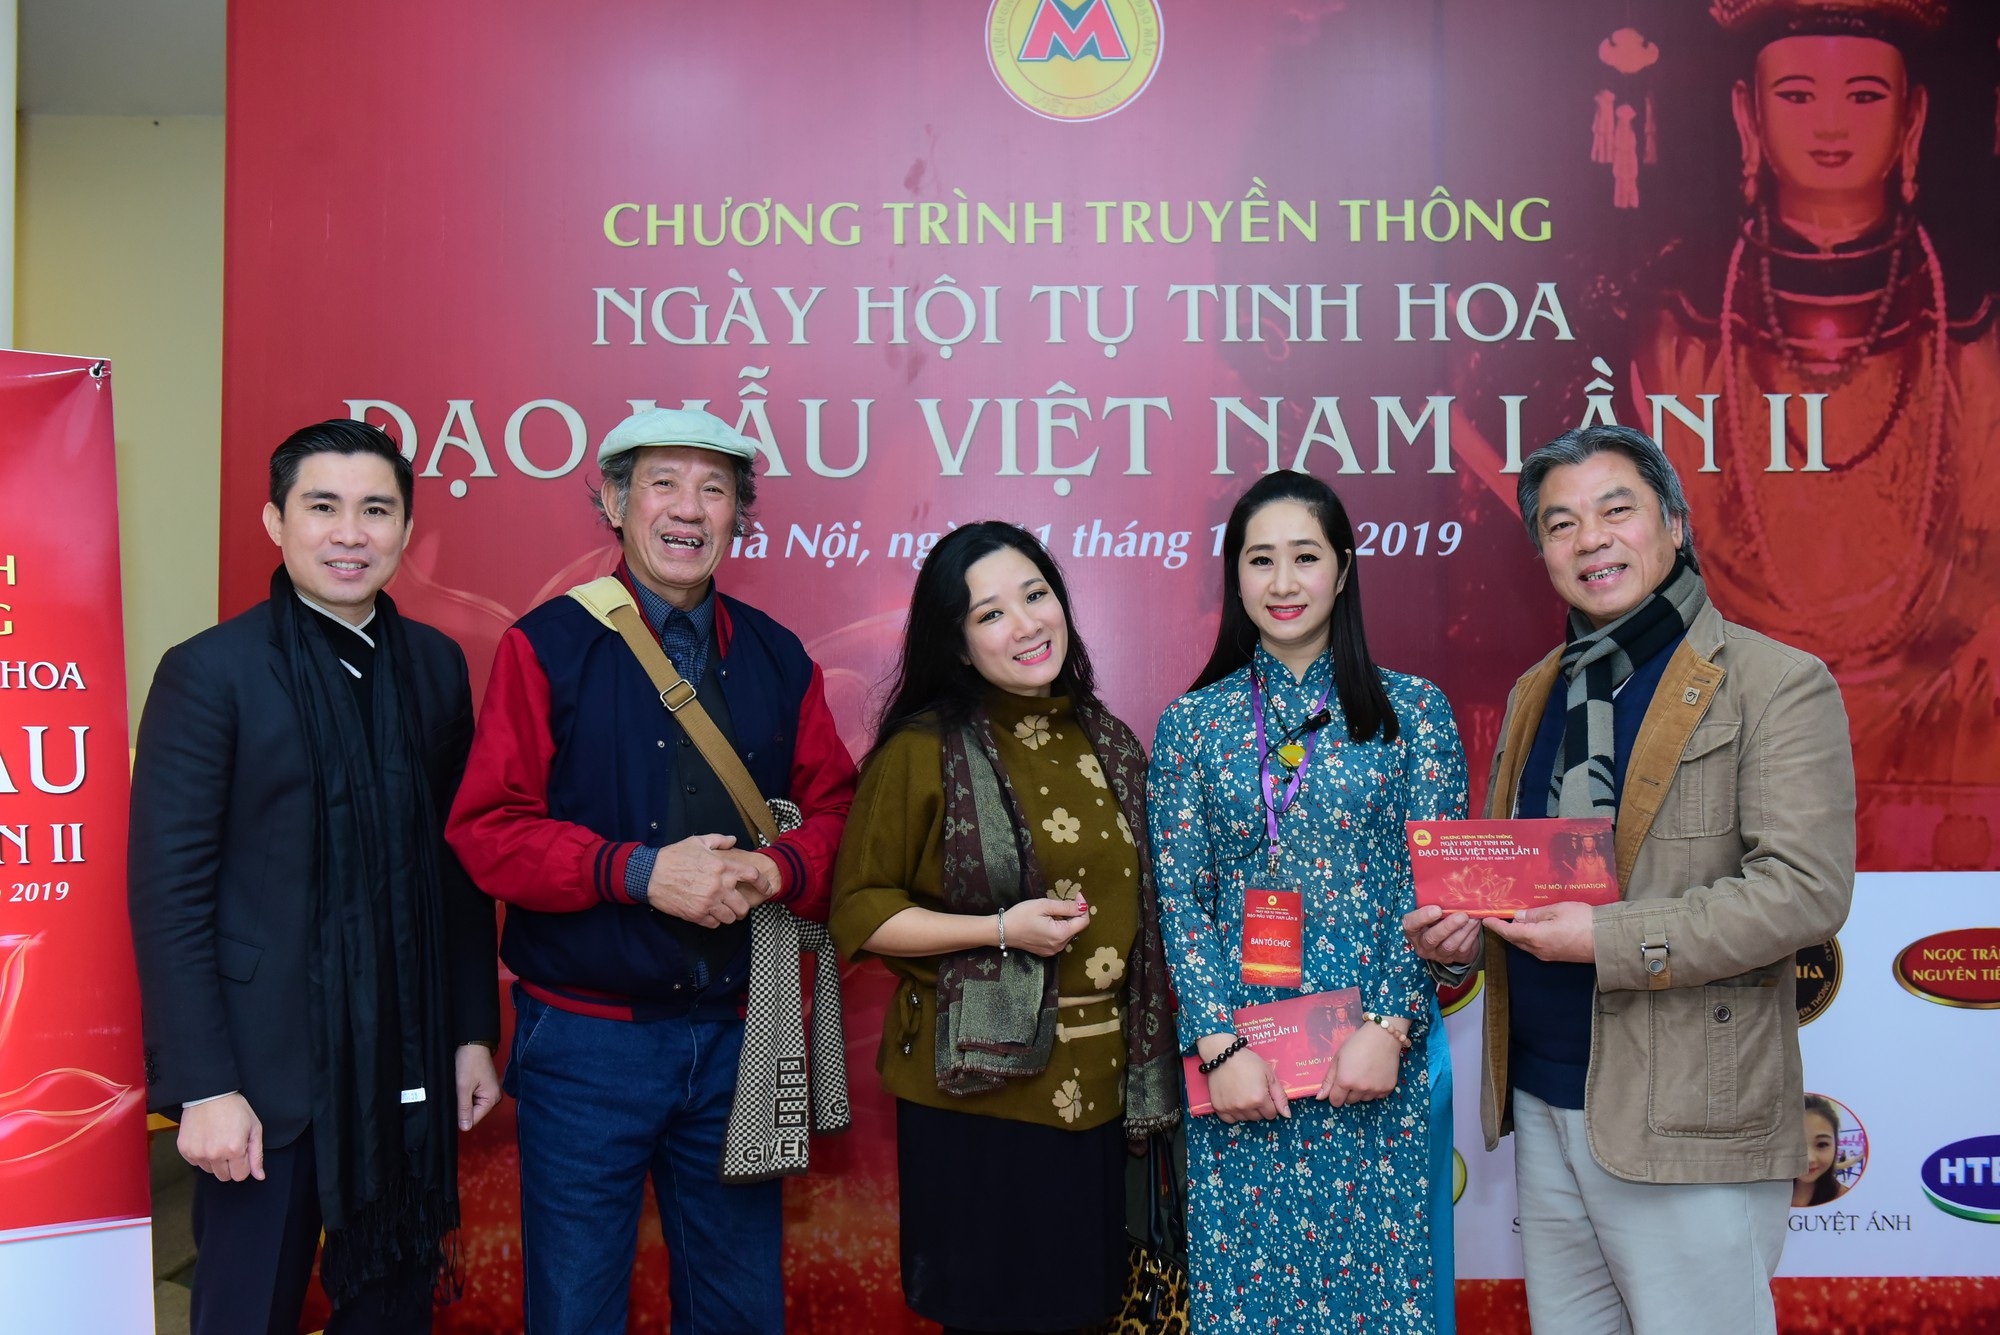 Ngày hội tụ tinh hoa Đạo Mẫu Việt Nam lần 2” | Báo Dân trí